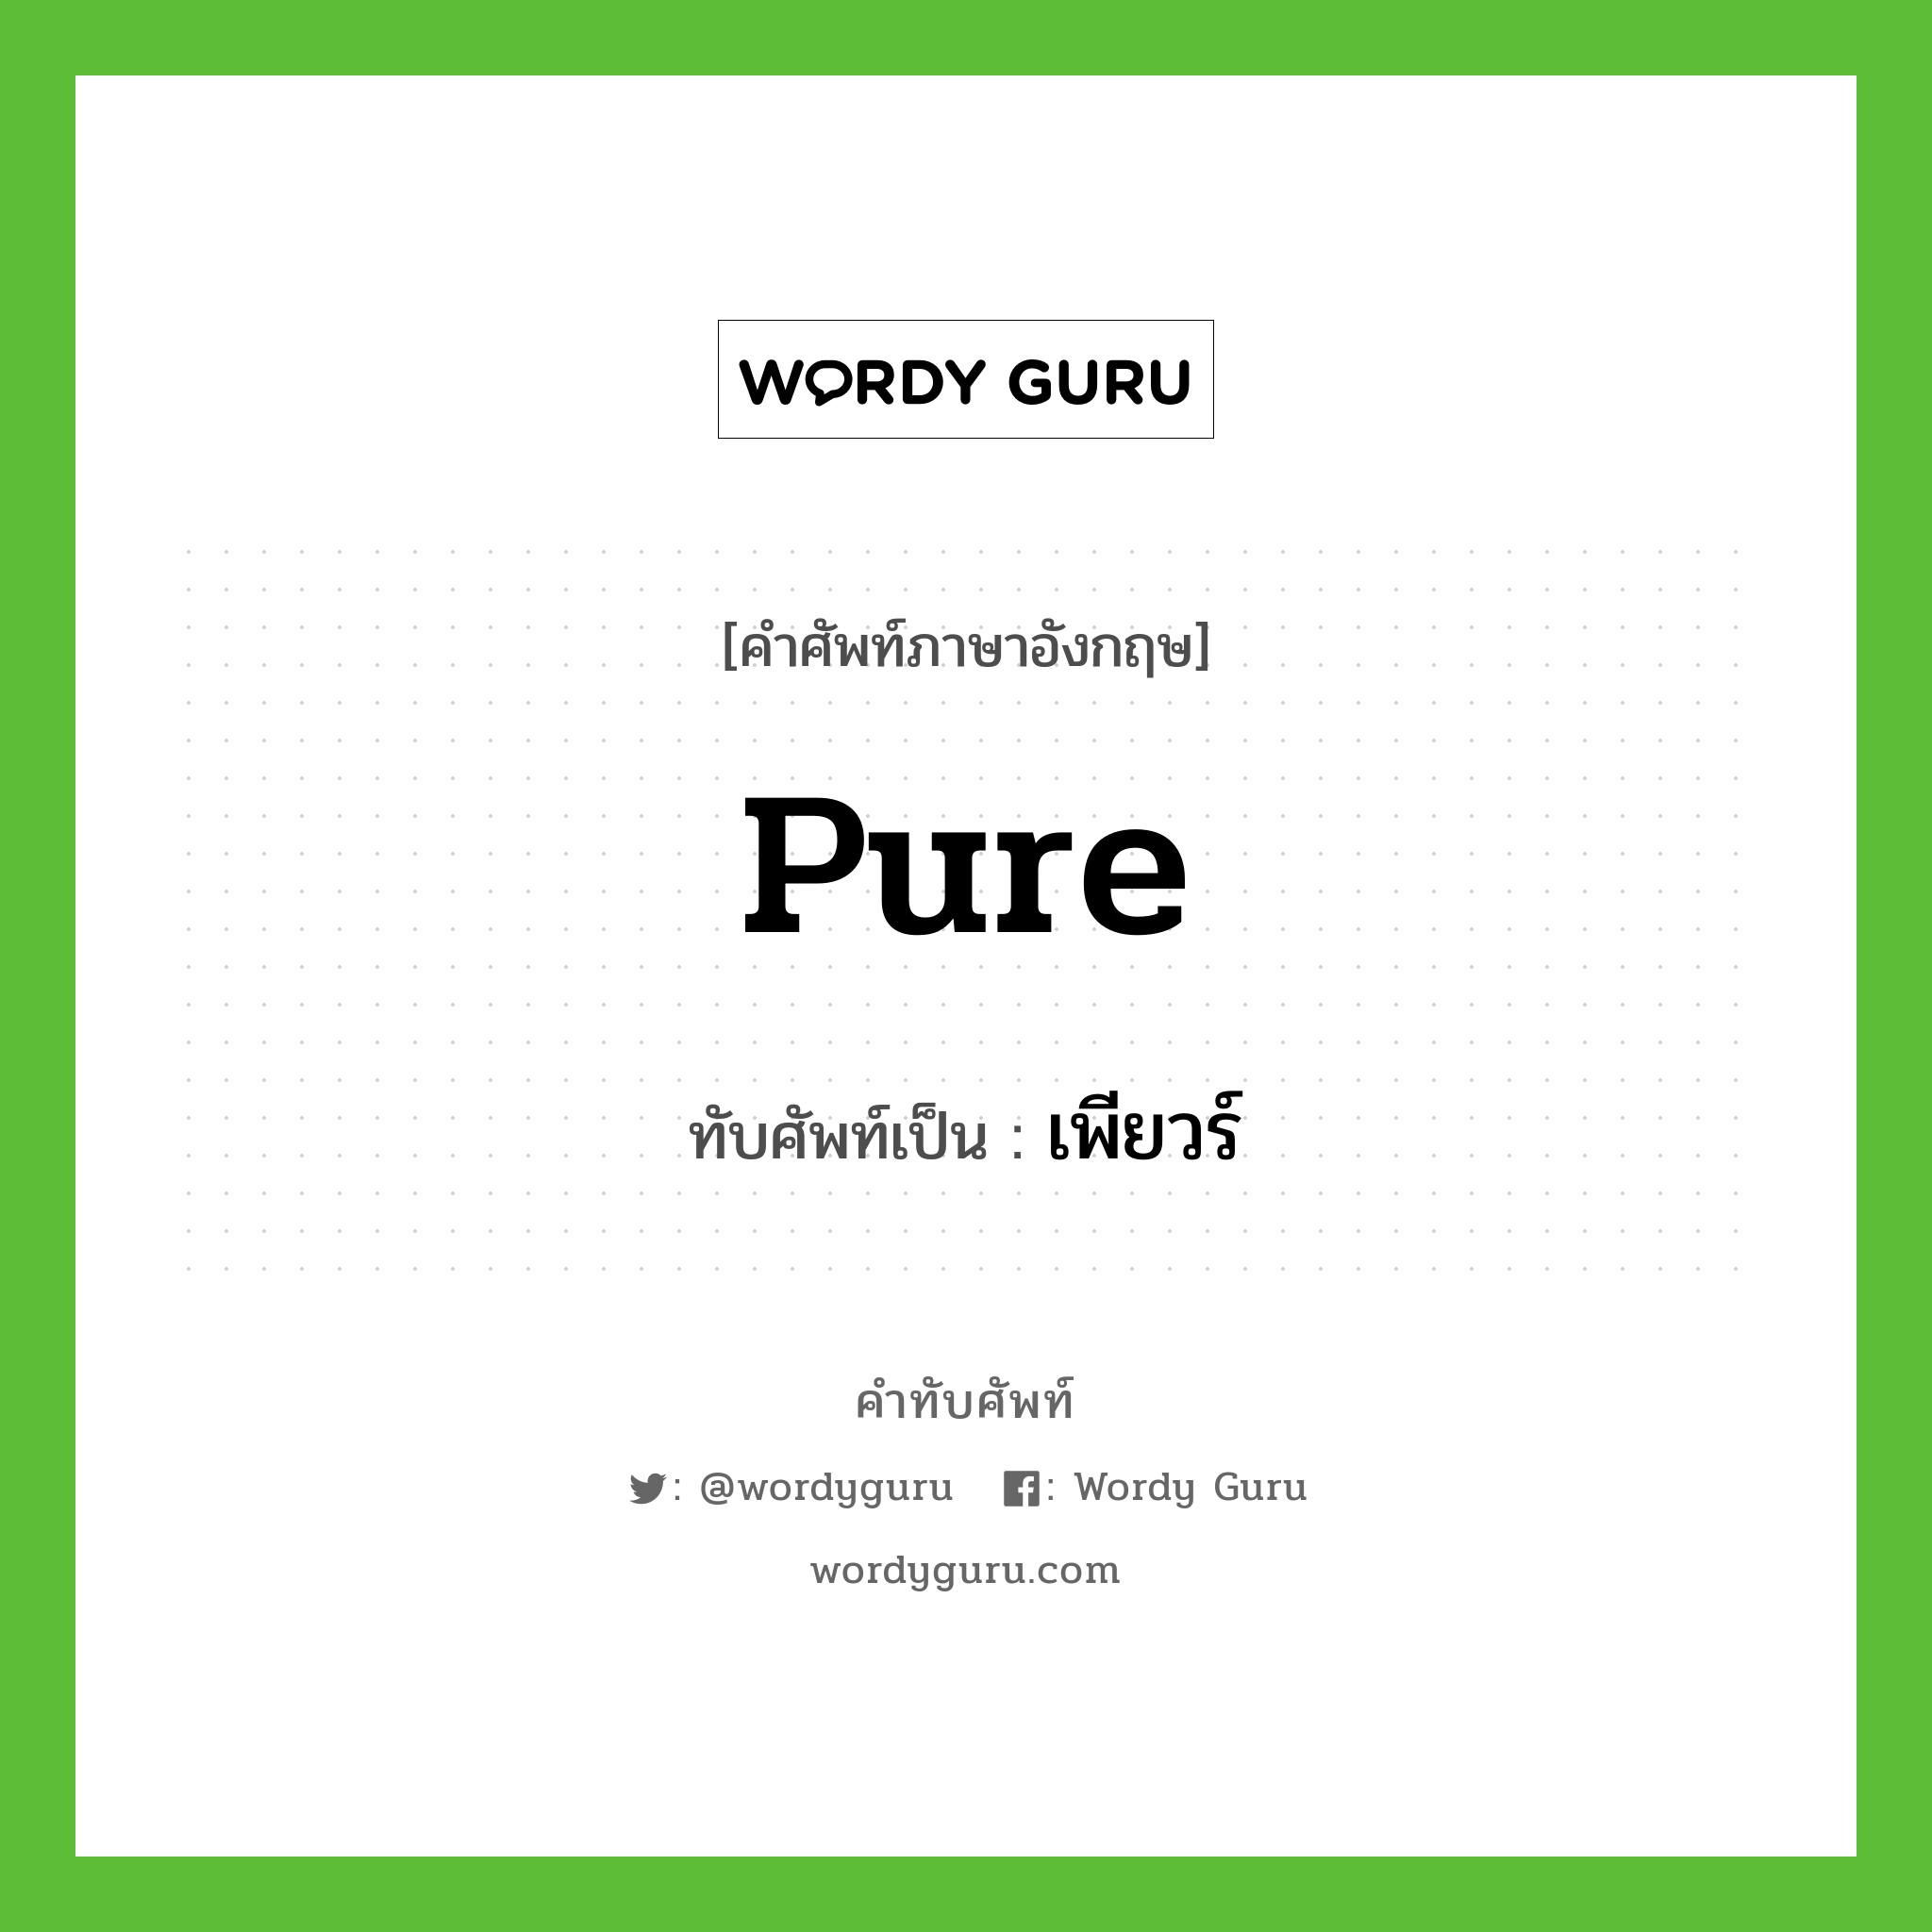 Pure เขียนเป็นคำไทยว่าอะไร?, คำศัพท์ภาษาอังกฤษ Pure ทับศัพท์เป็น เพียวร์